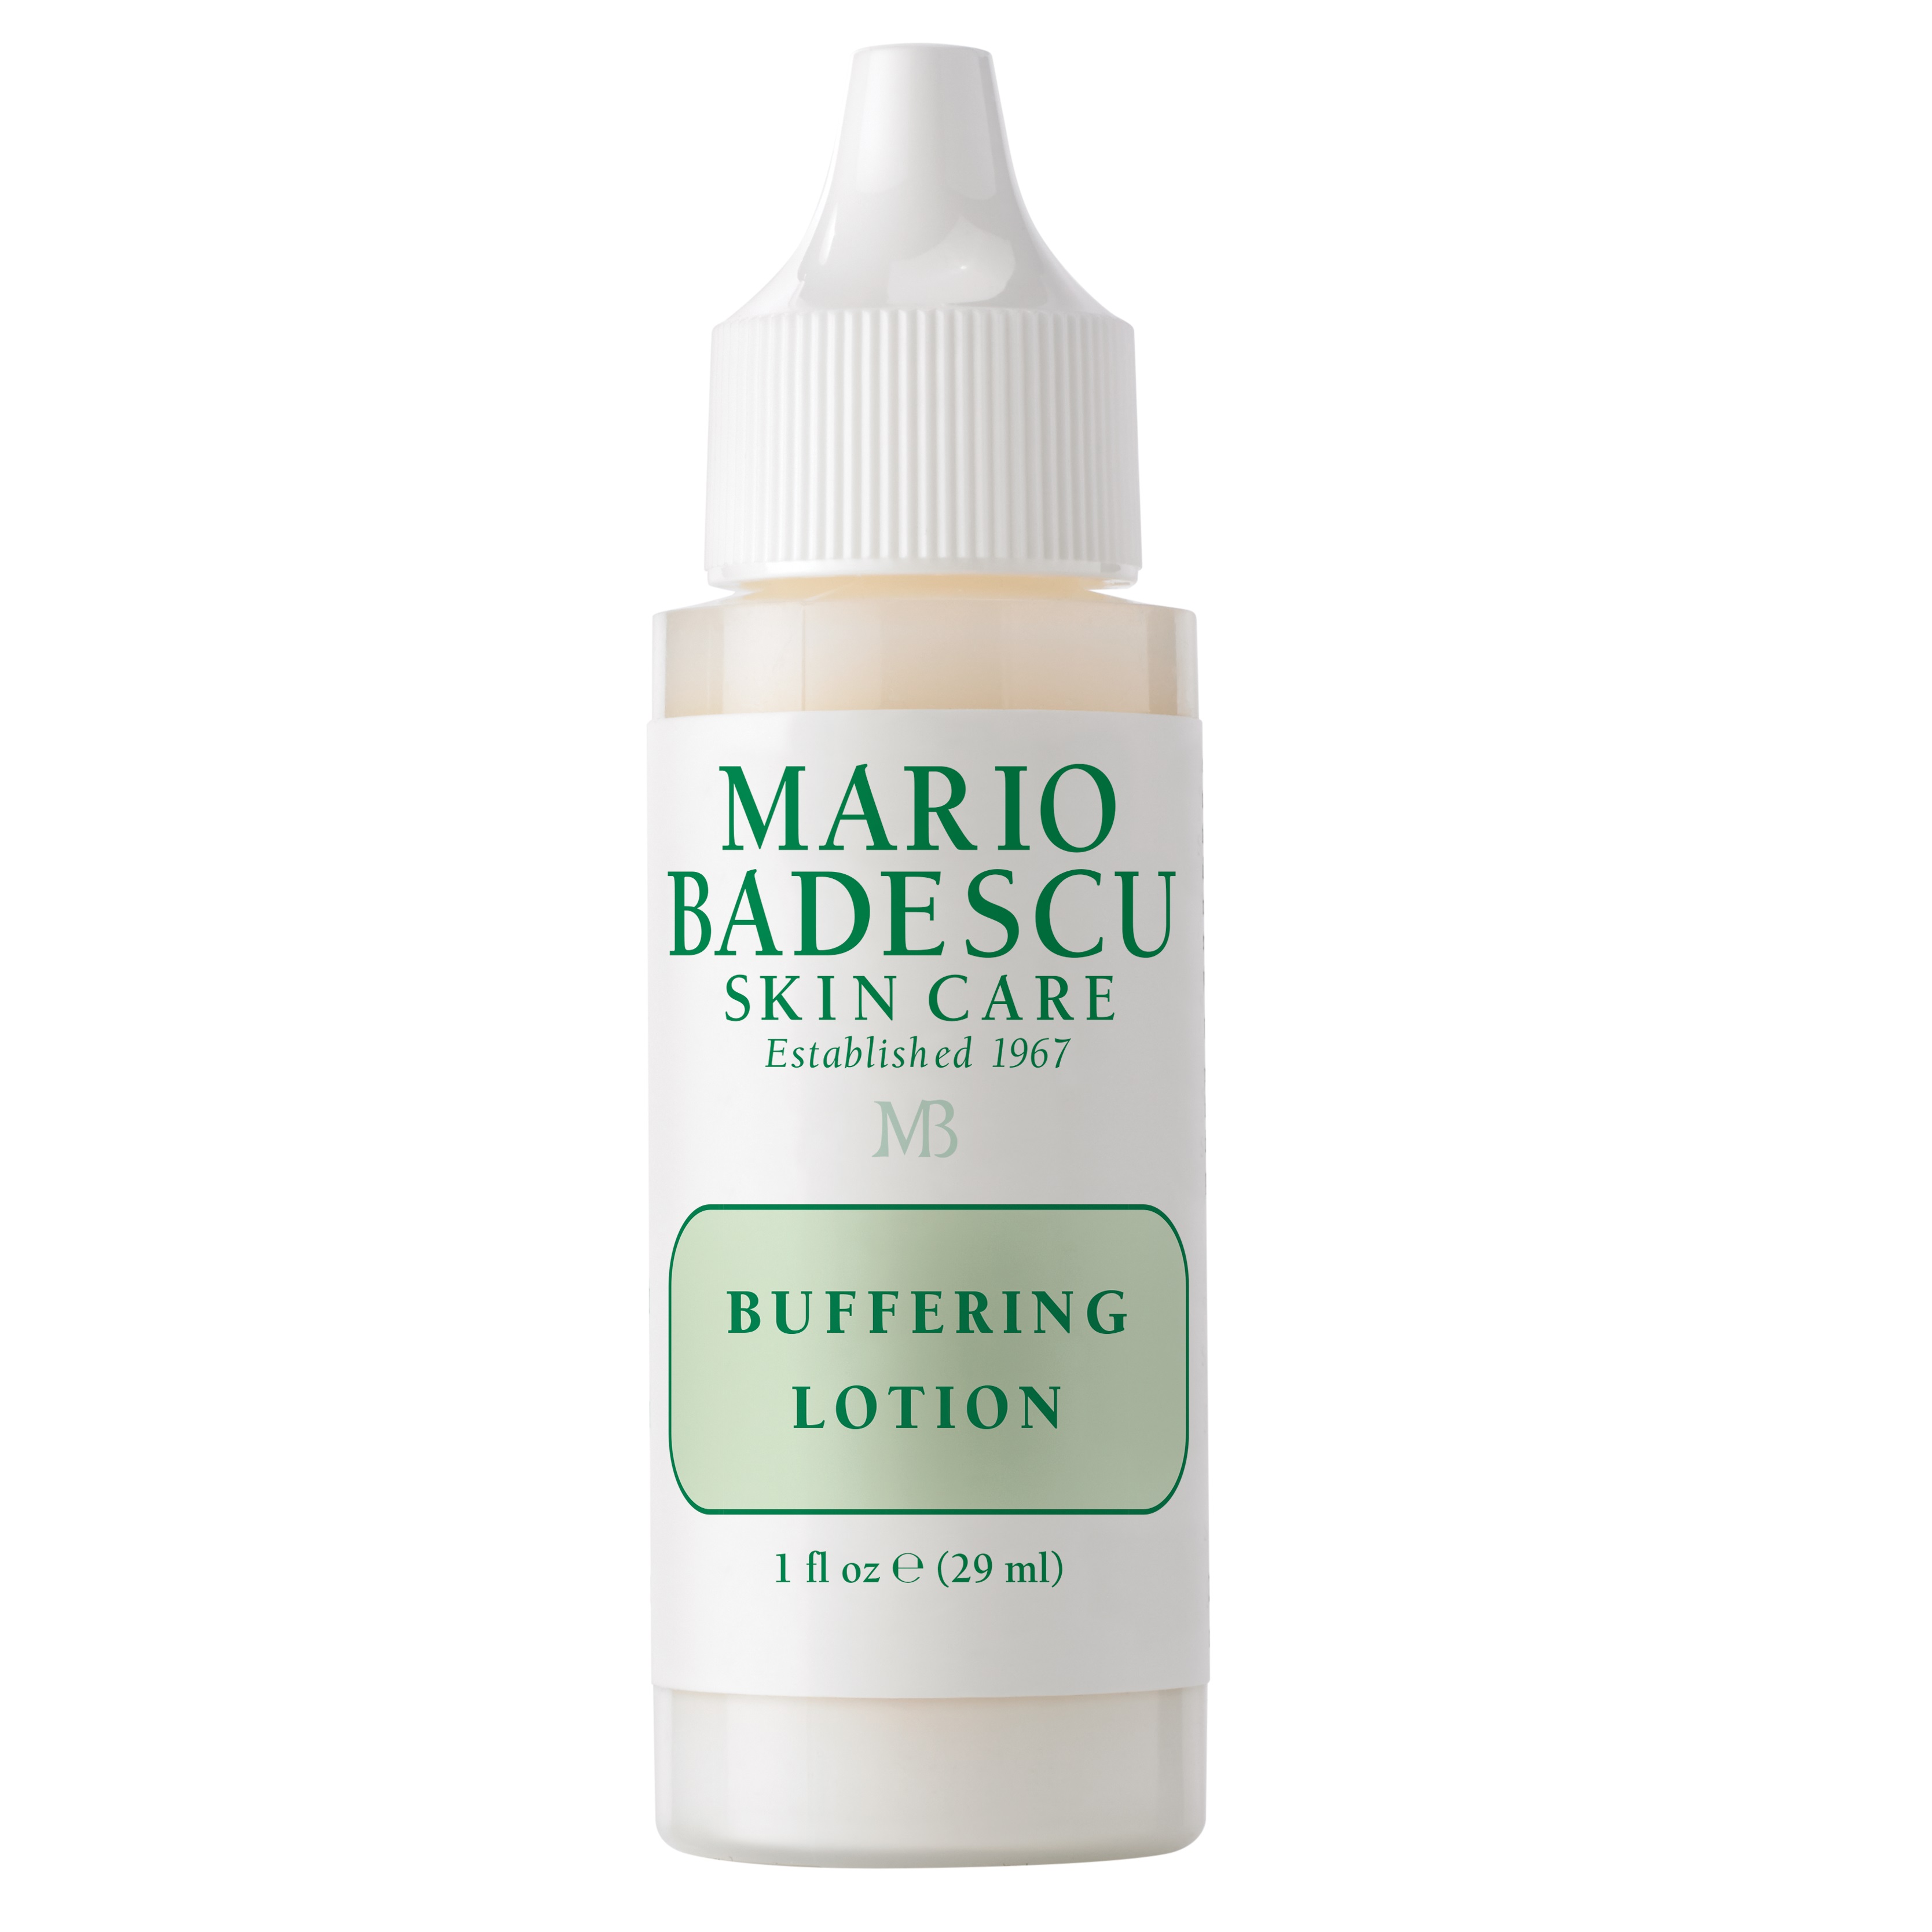 Lotiune impotriva eruptiilor acneice Buffering Lotion, 29 ml, Mario Badescu